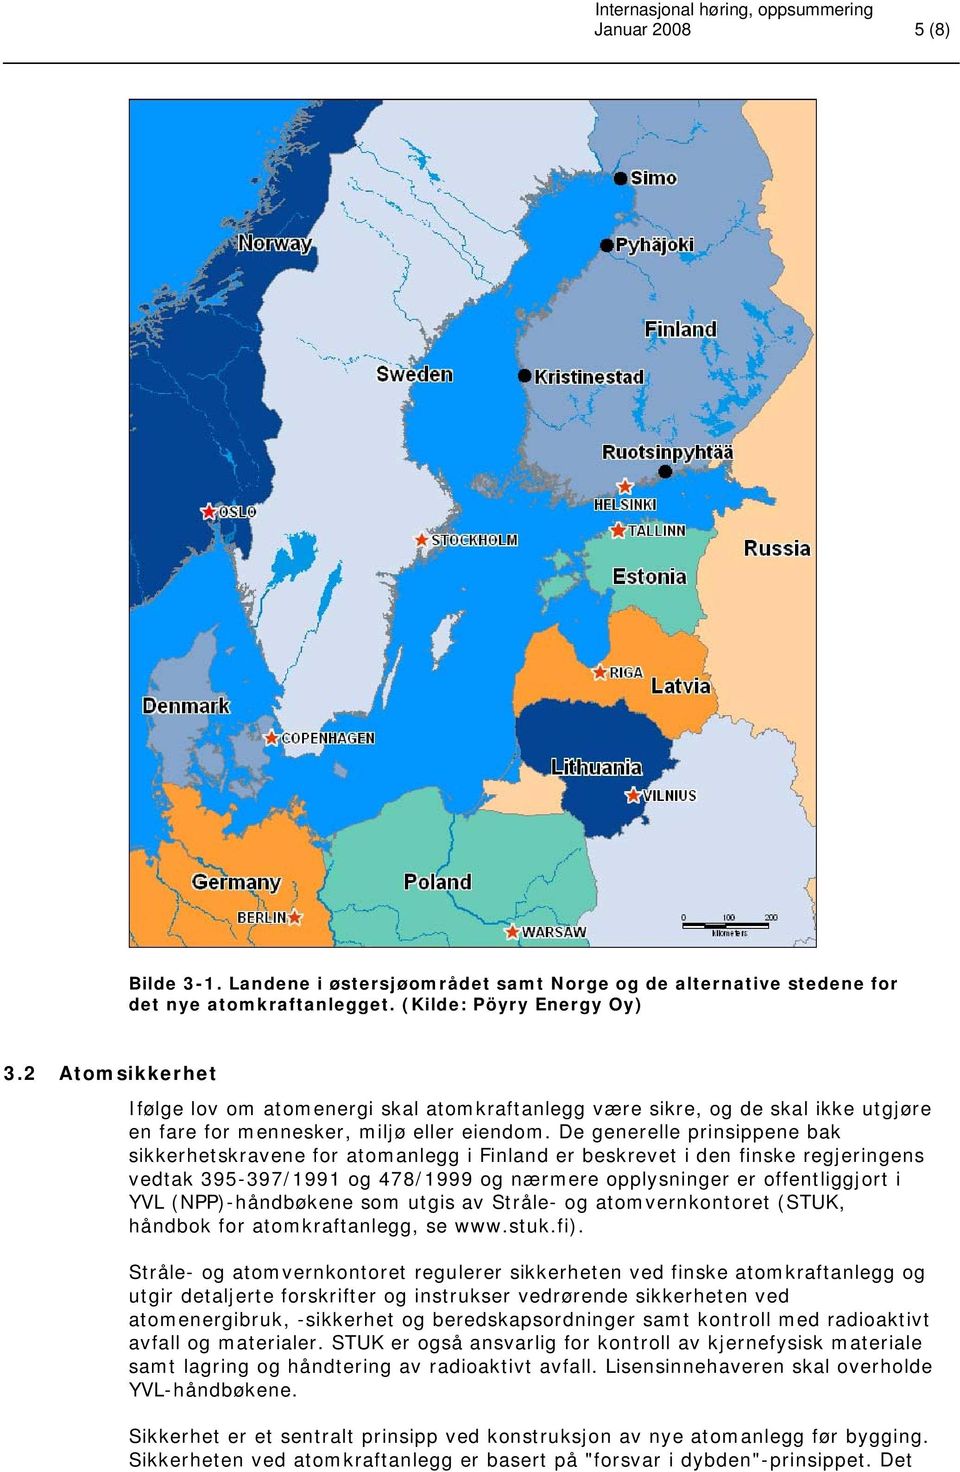 De generelle prinsippene bak sikkerhetskravene for atomanlegg i Finland er beskrevet i den finske regjeringens vedtak 395-397/1991 og 478/1999 og nærmere opplysninger er offentliggjort i YVL